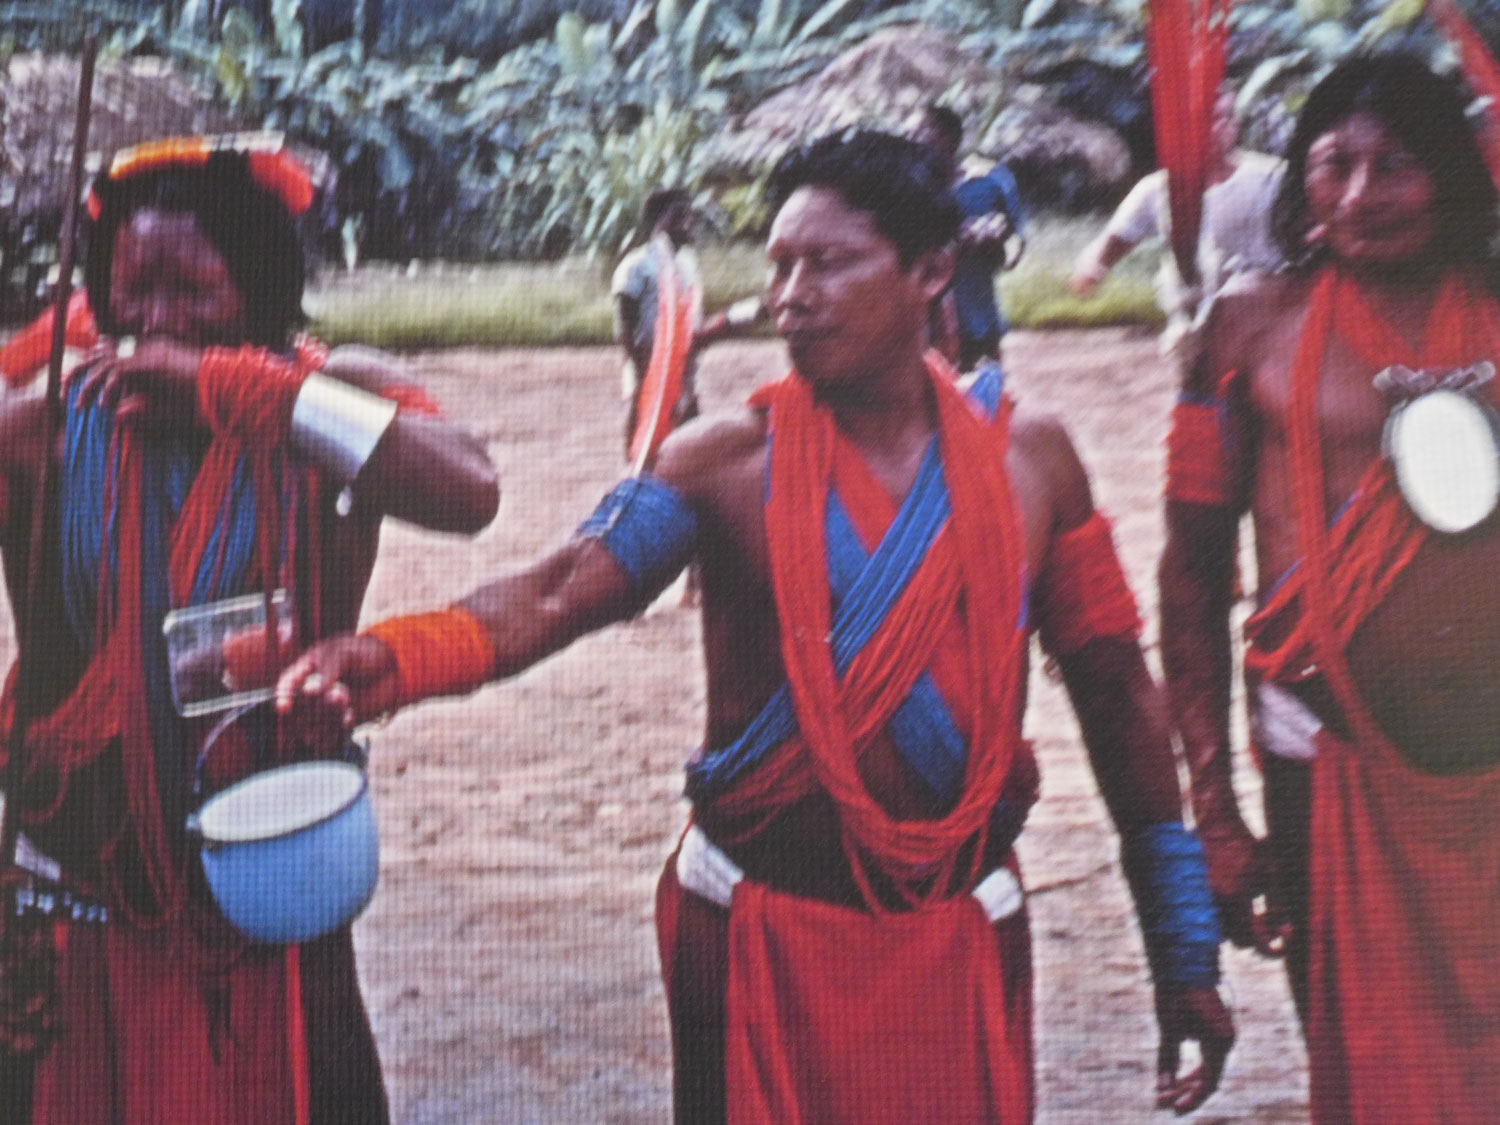 Image des postulants lors du rituel du maraké.